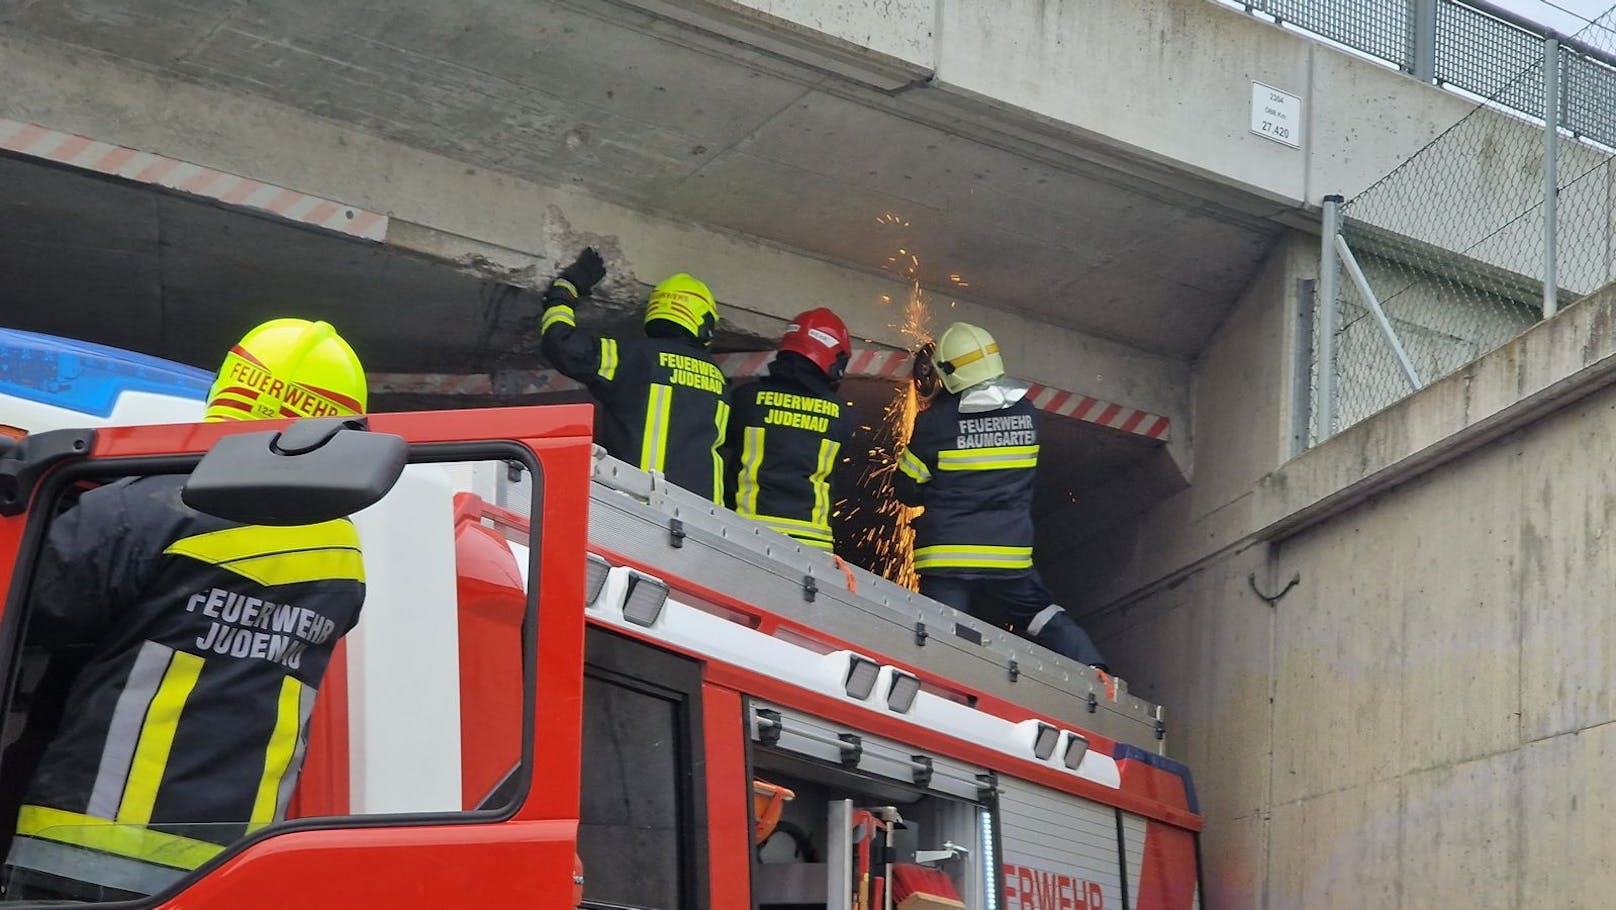 Lkw blieb in Unterführung stecken: Die Feuerwehr bei den Flex-Arbeiten